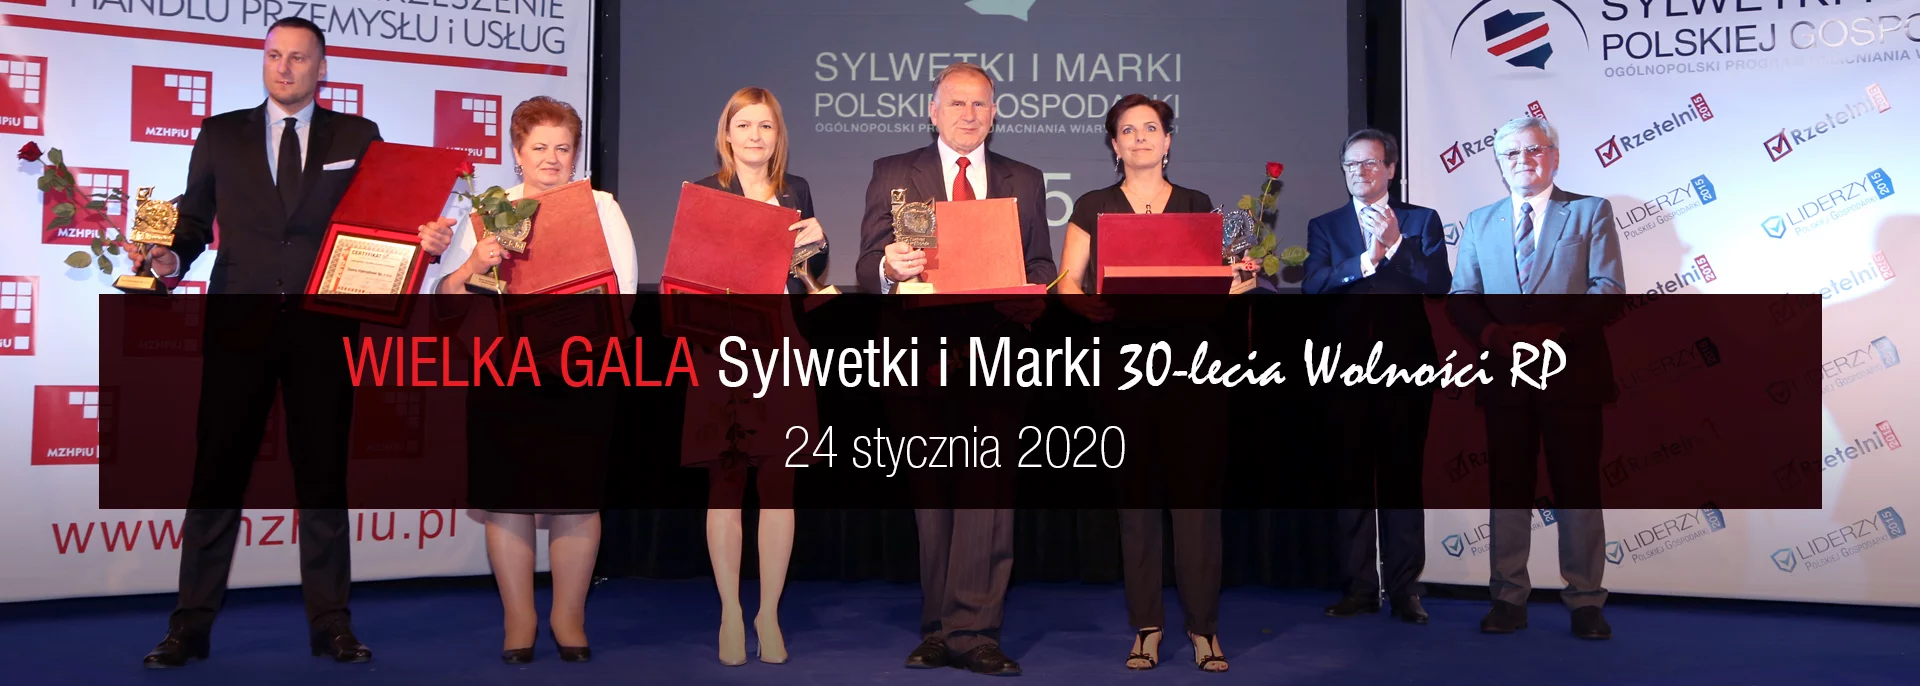 Wielka Gala "Sylwetki i Marki 30-lecia Wolności RP"